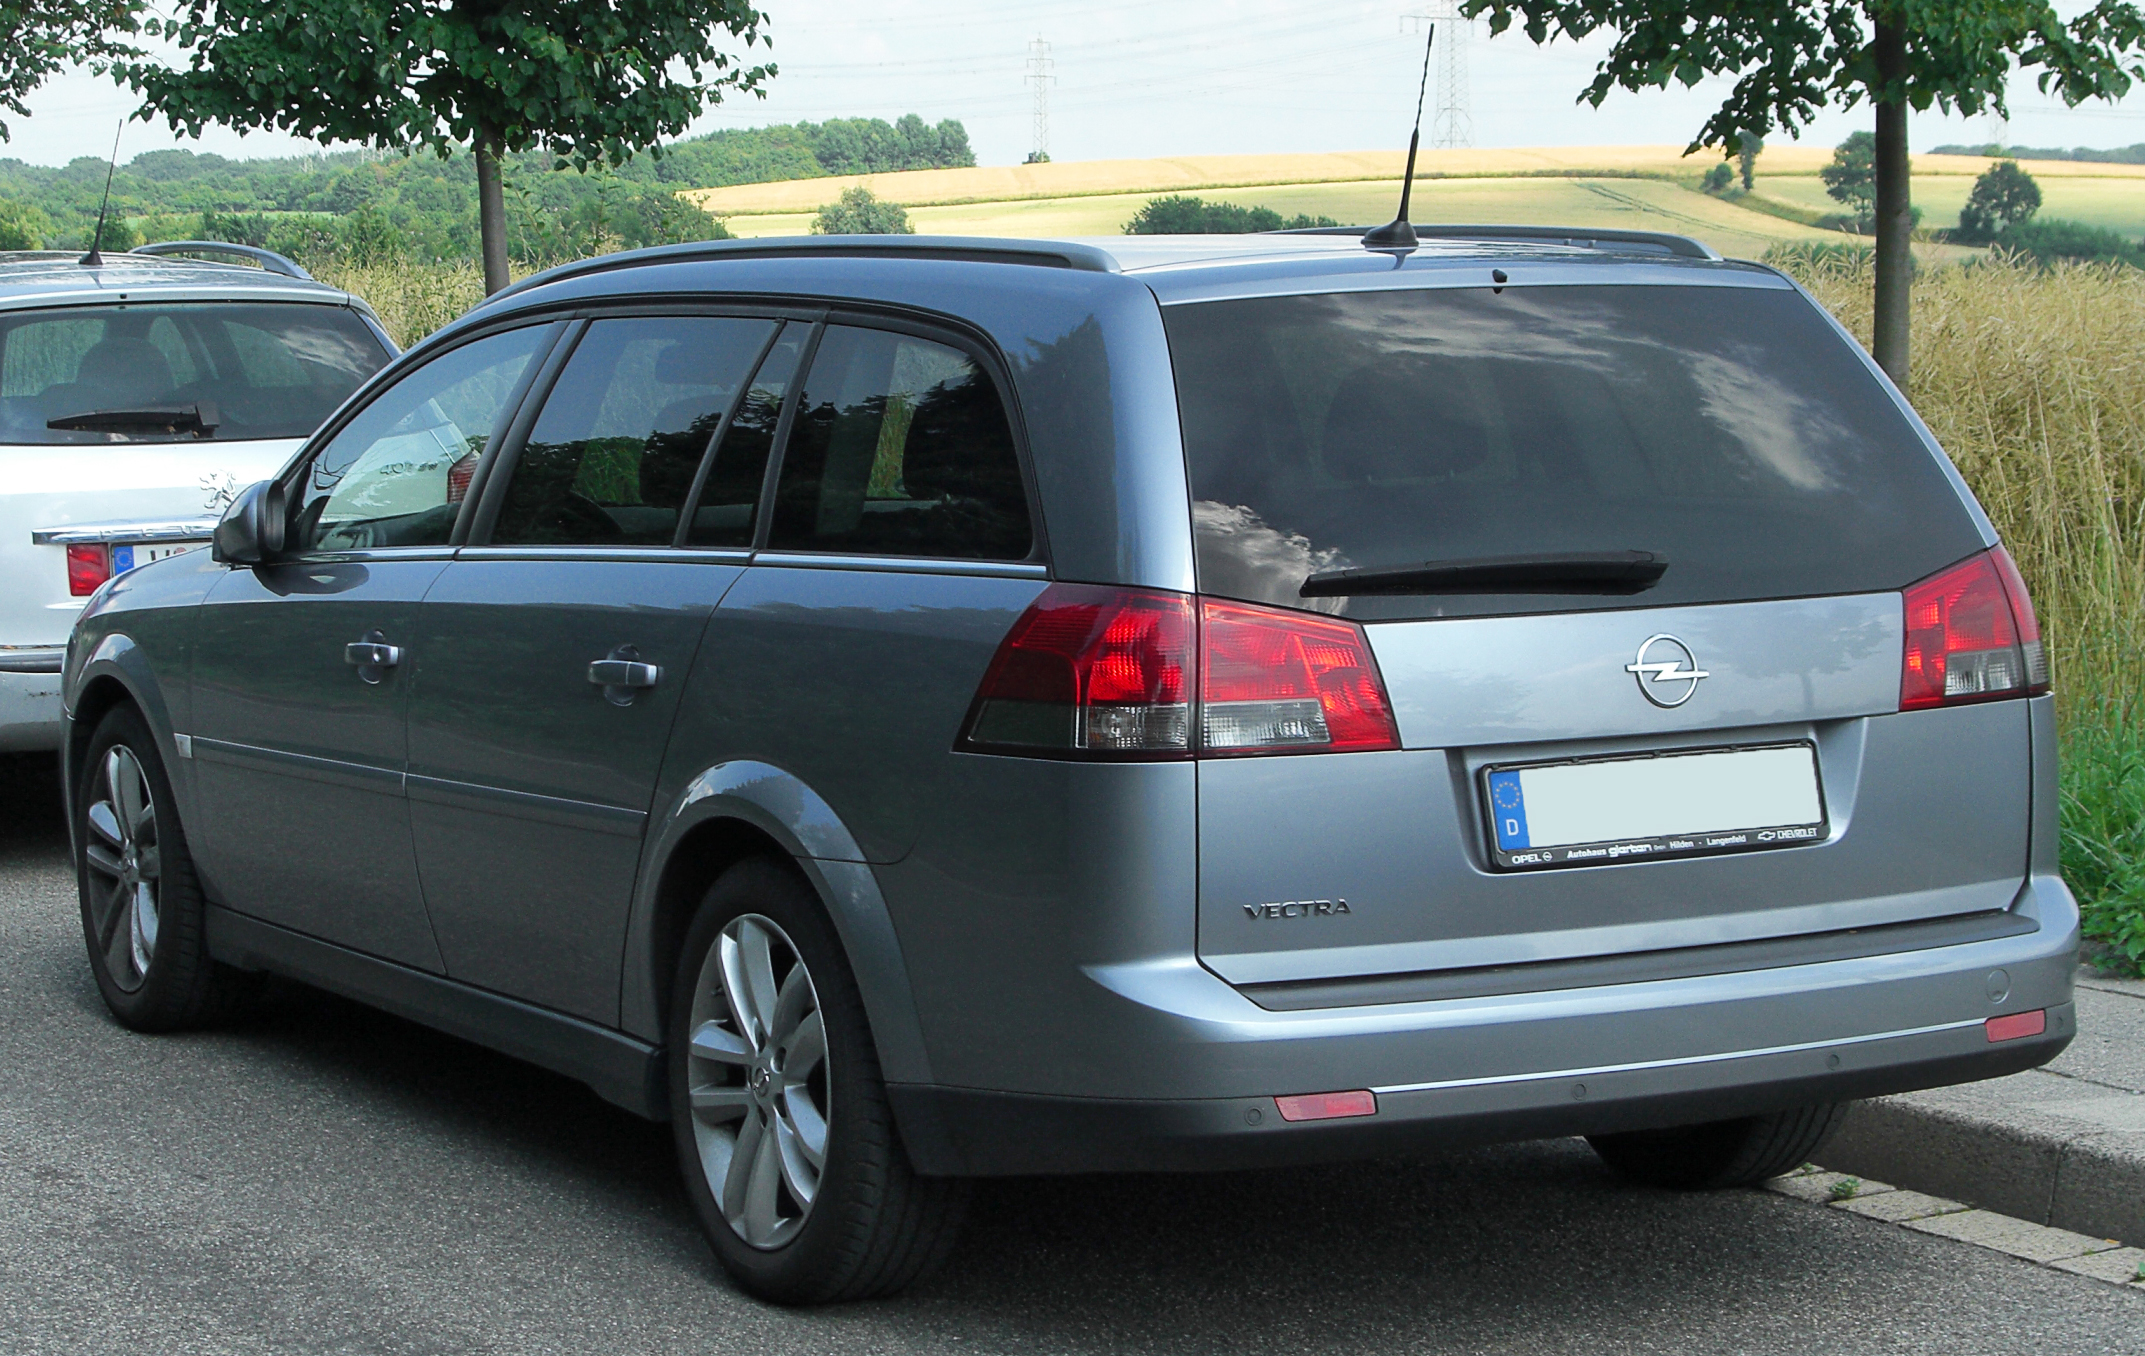 https://upload.wikimedia.org/wikipedia/commons/d/d1/Opel_Vectra_C_Caravan_Facelift_rear_20100711.jpg